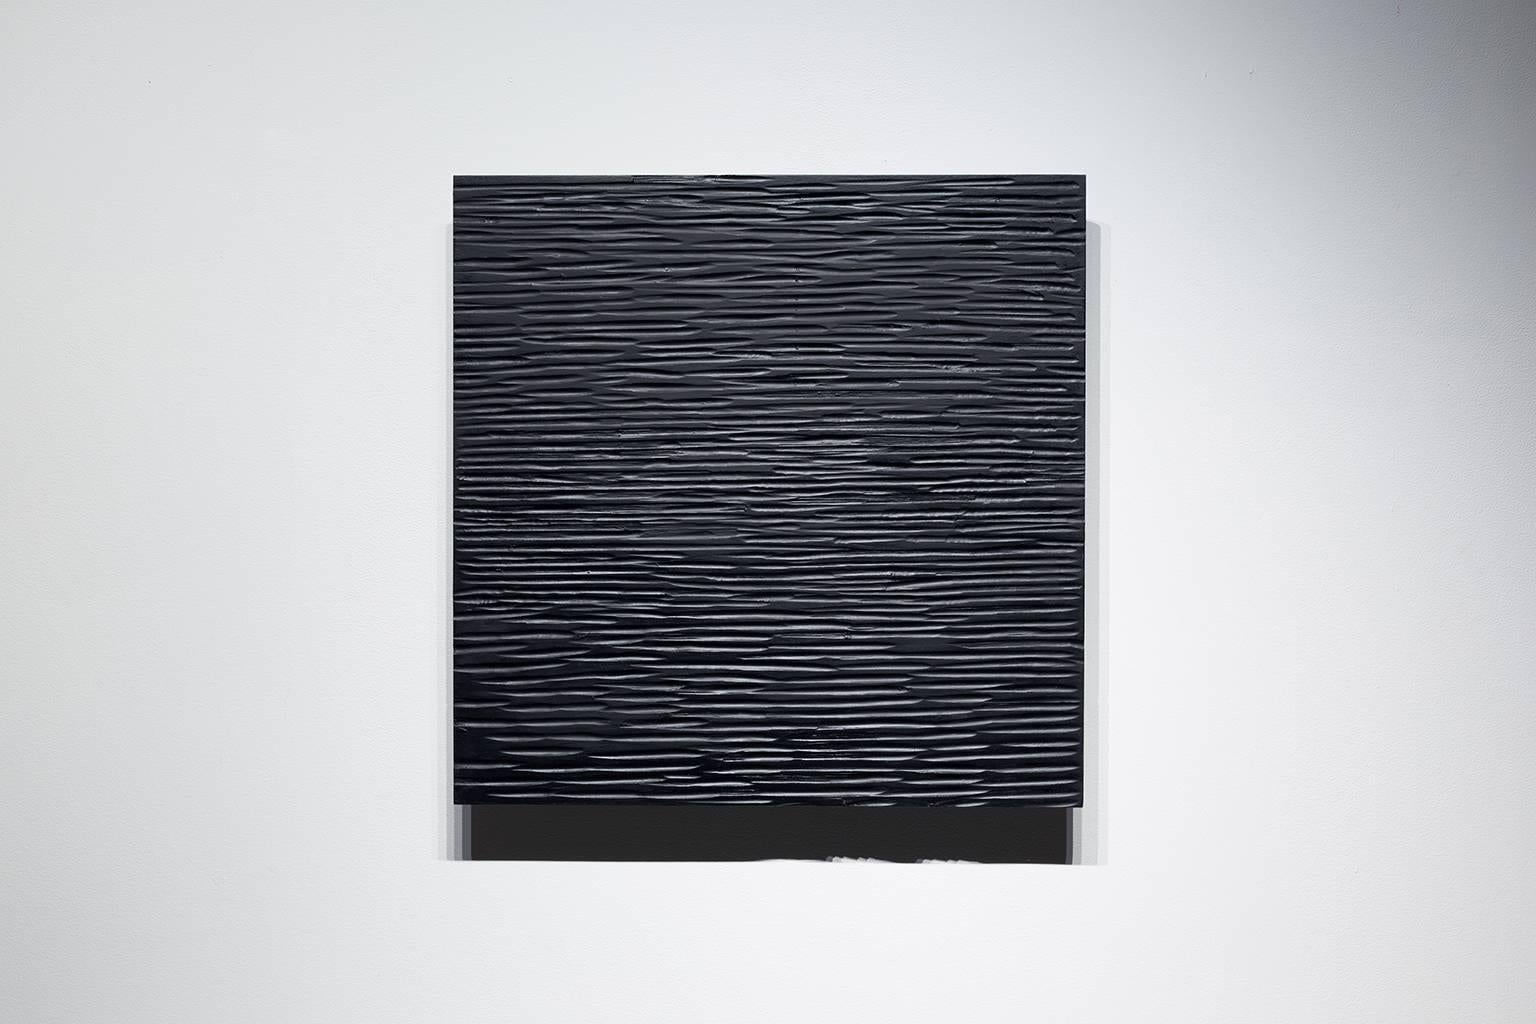 Abstract Painting Jessica Houston - C'est tellement silencieux qu'on peut les entendre respirer